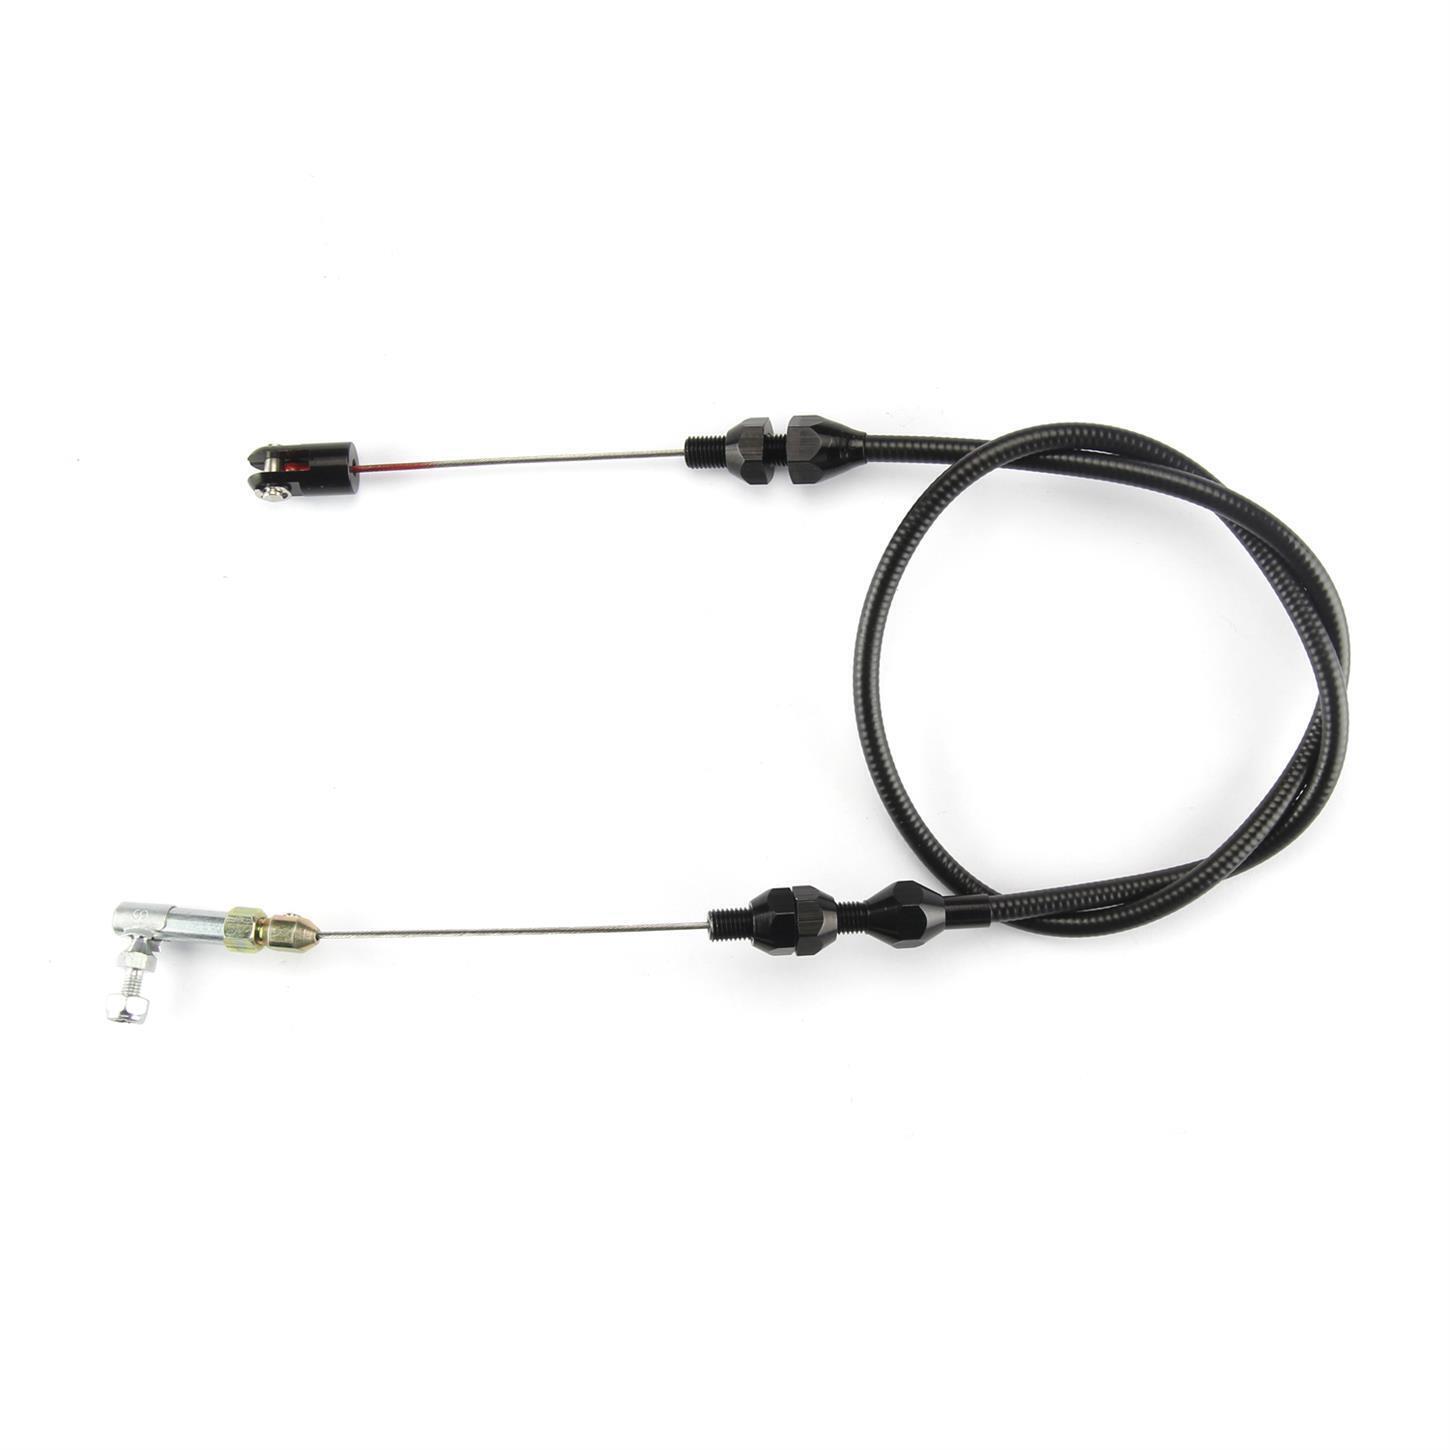 Lokar XTC-1000U 24 Inch Throttle Cable W/ Black Fittings